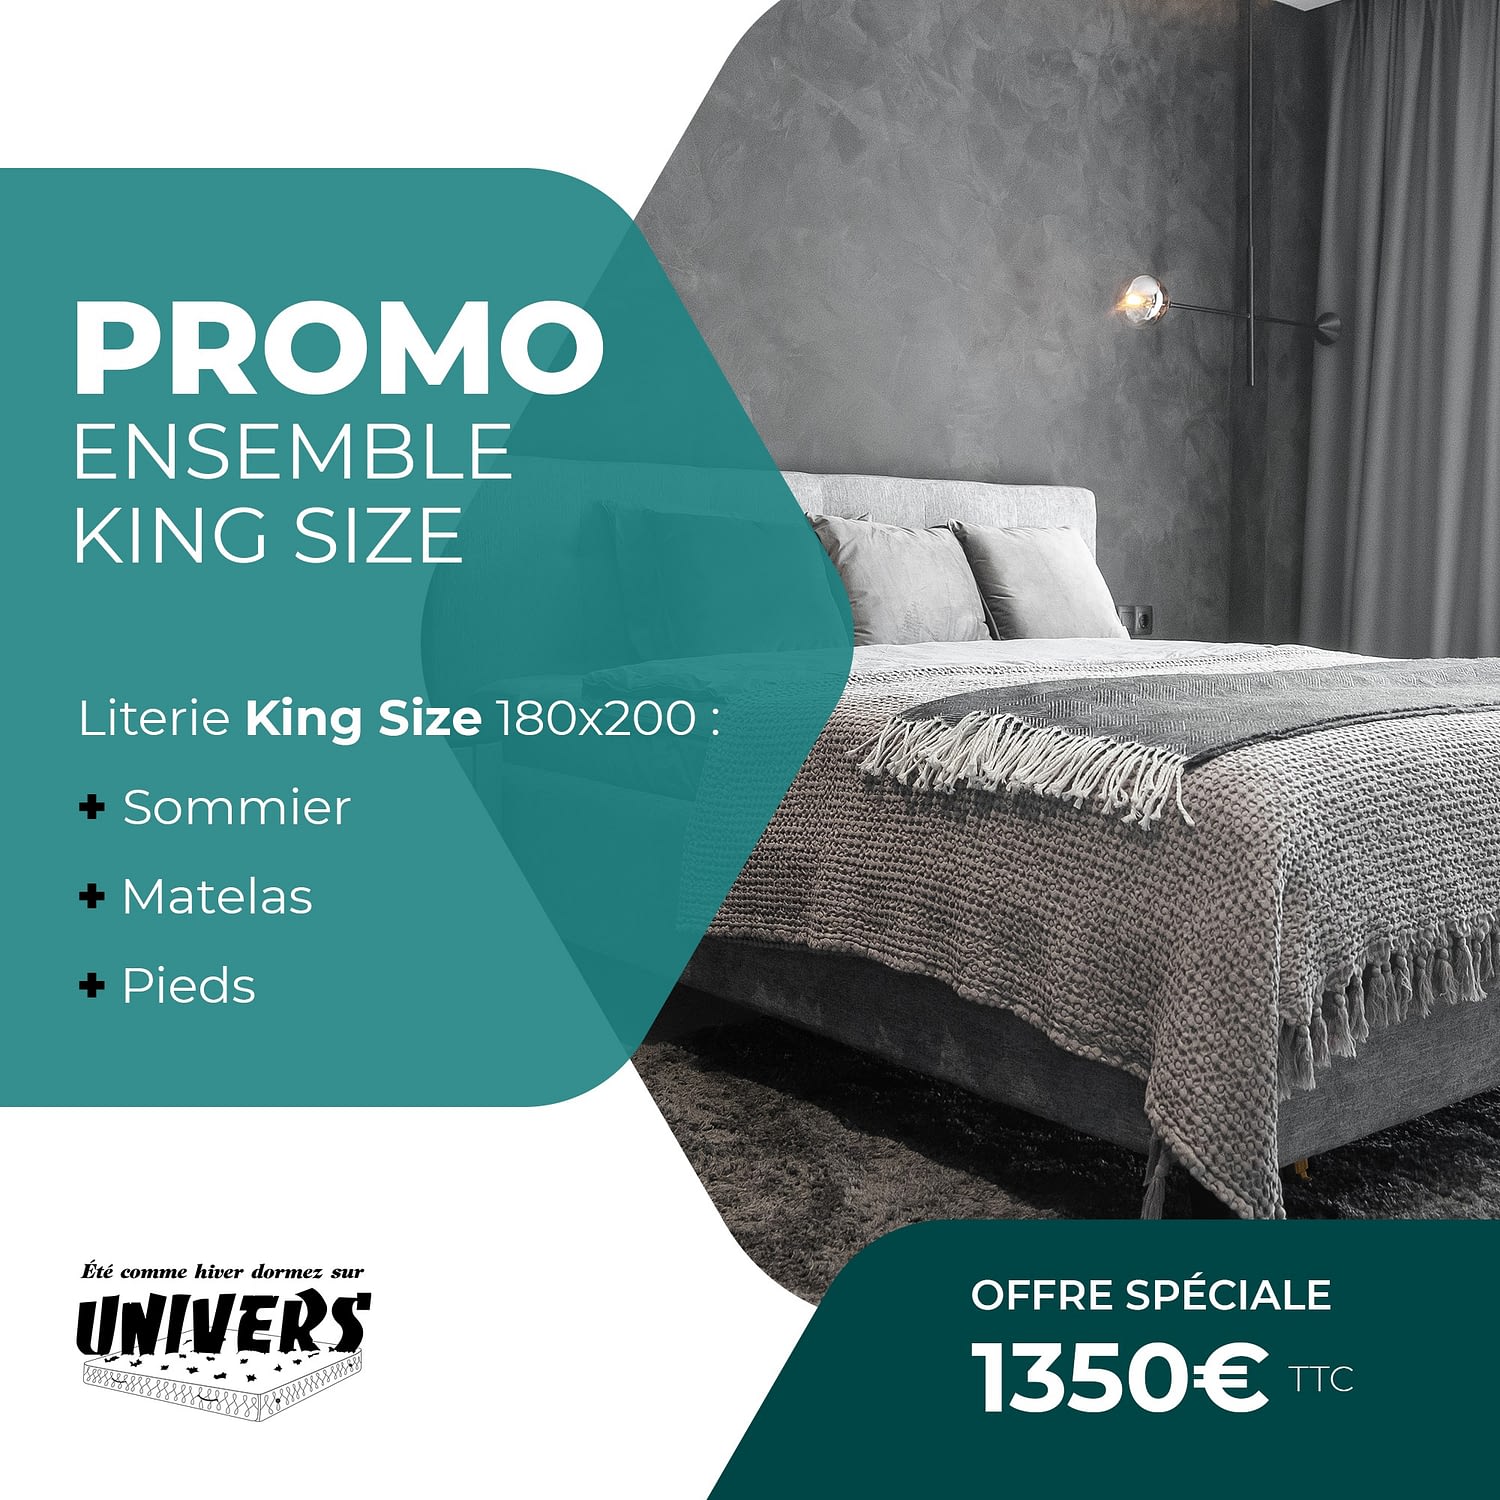 Literie King Size promo : 1350€ TTC, livraison incluse jusqu'à fin Avril